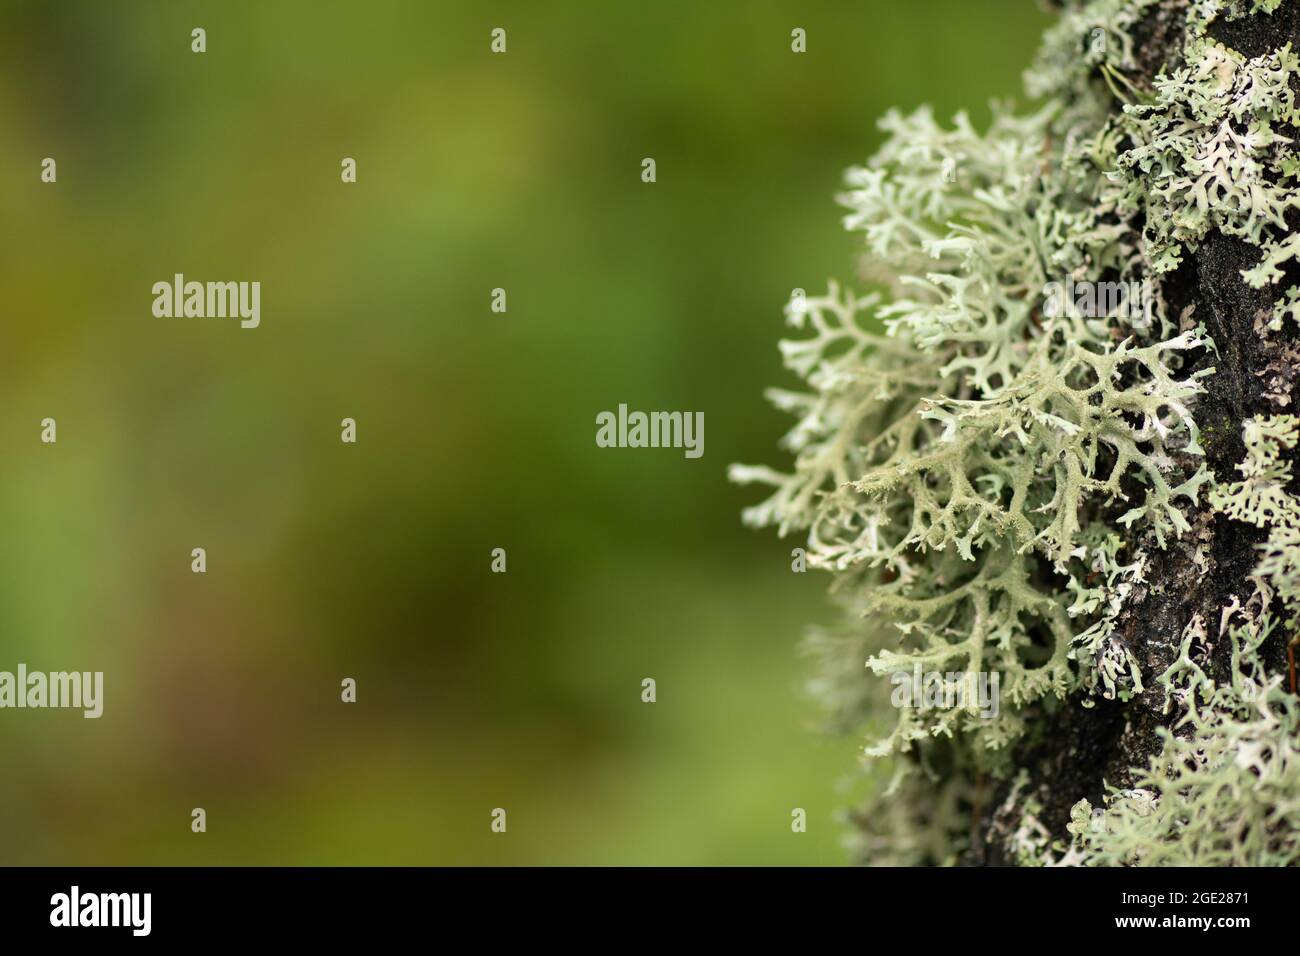 Wunderschöne Vielfalt von üppigem Moos und Flechten auf dem Stamm eines Baumes im Sommer, Nahaufnahme mit verschwommenem Hintergrund Stockfoto